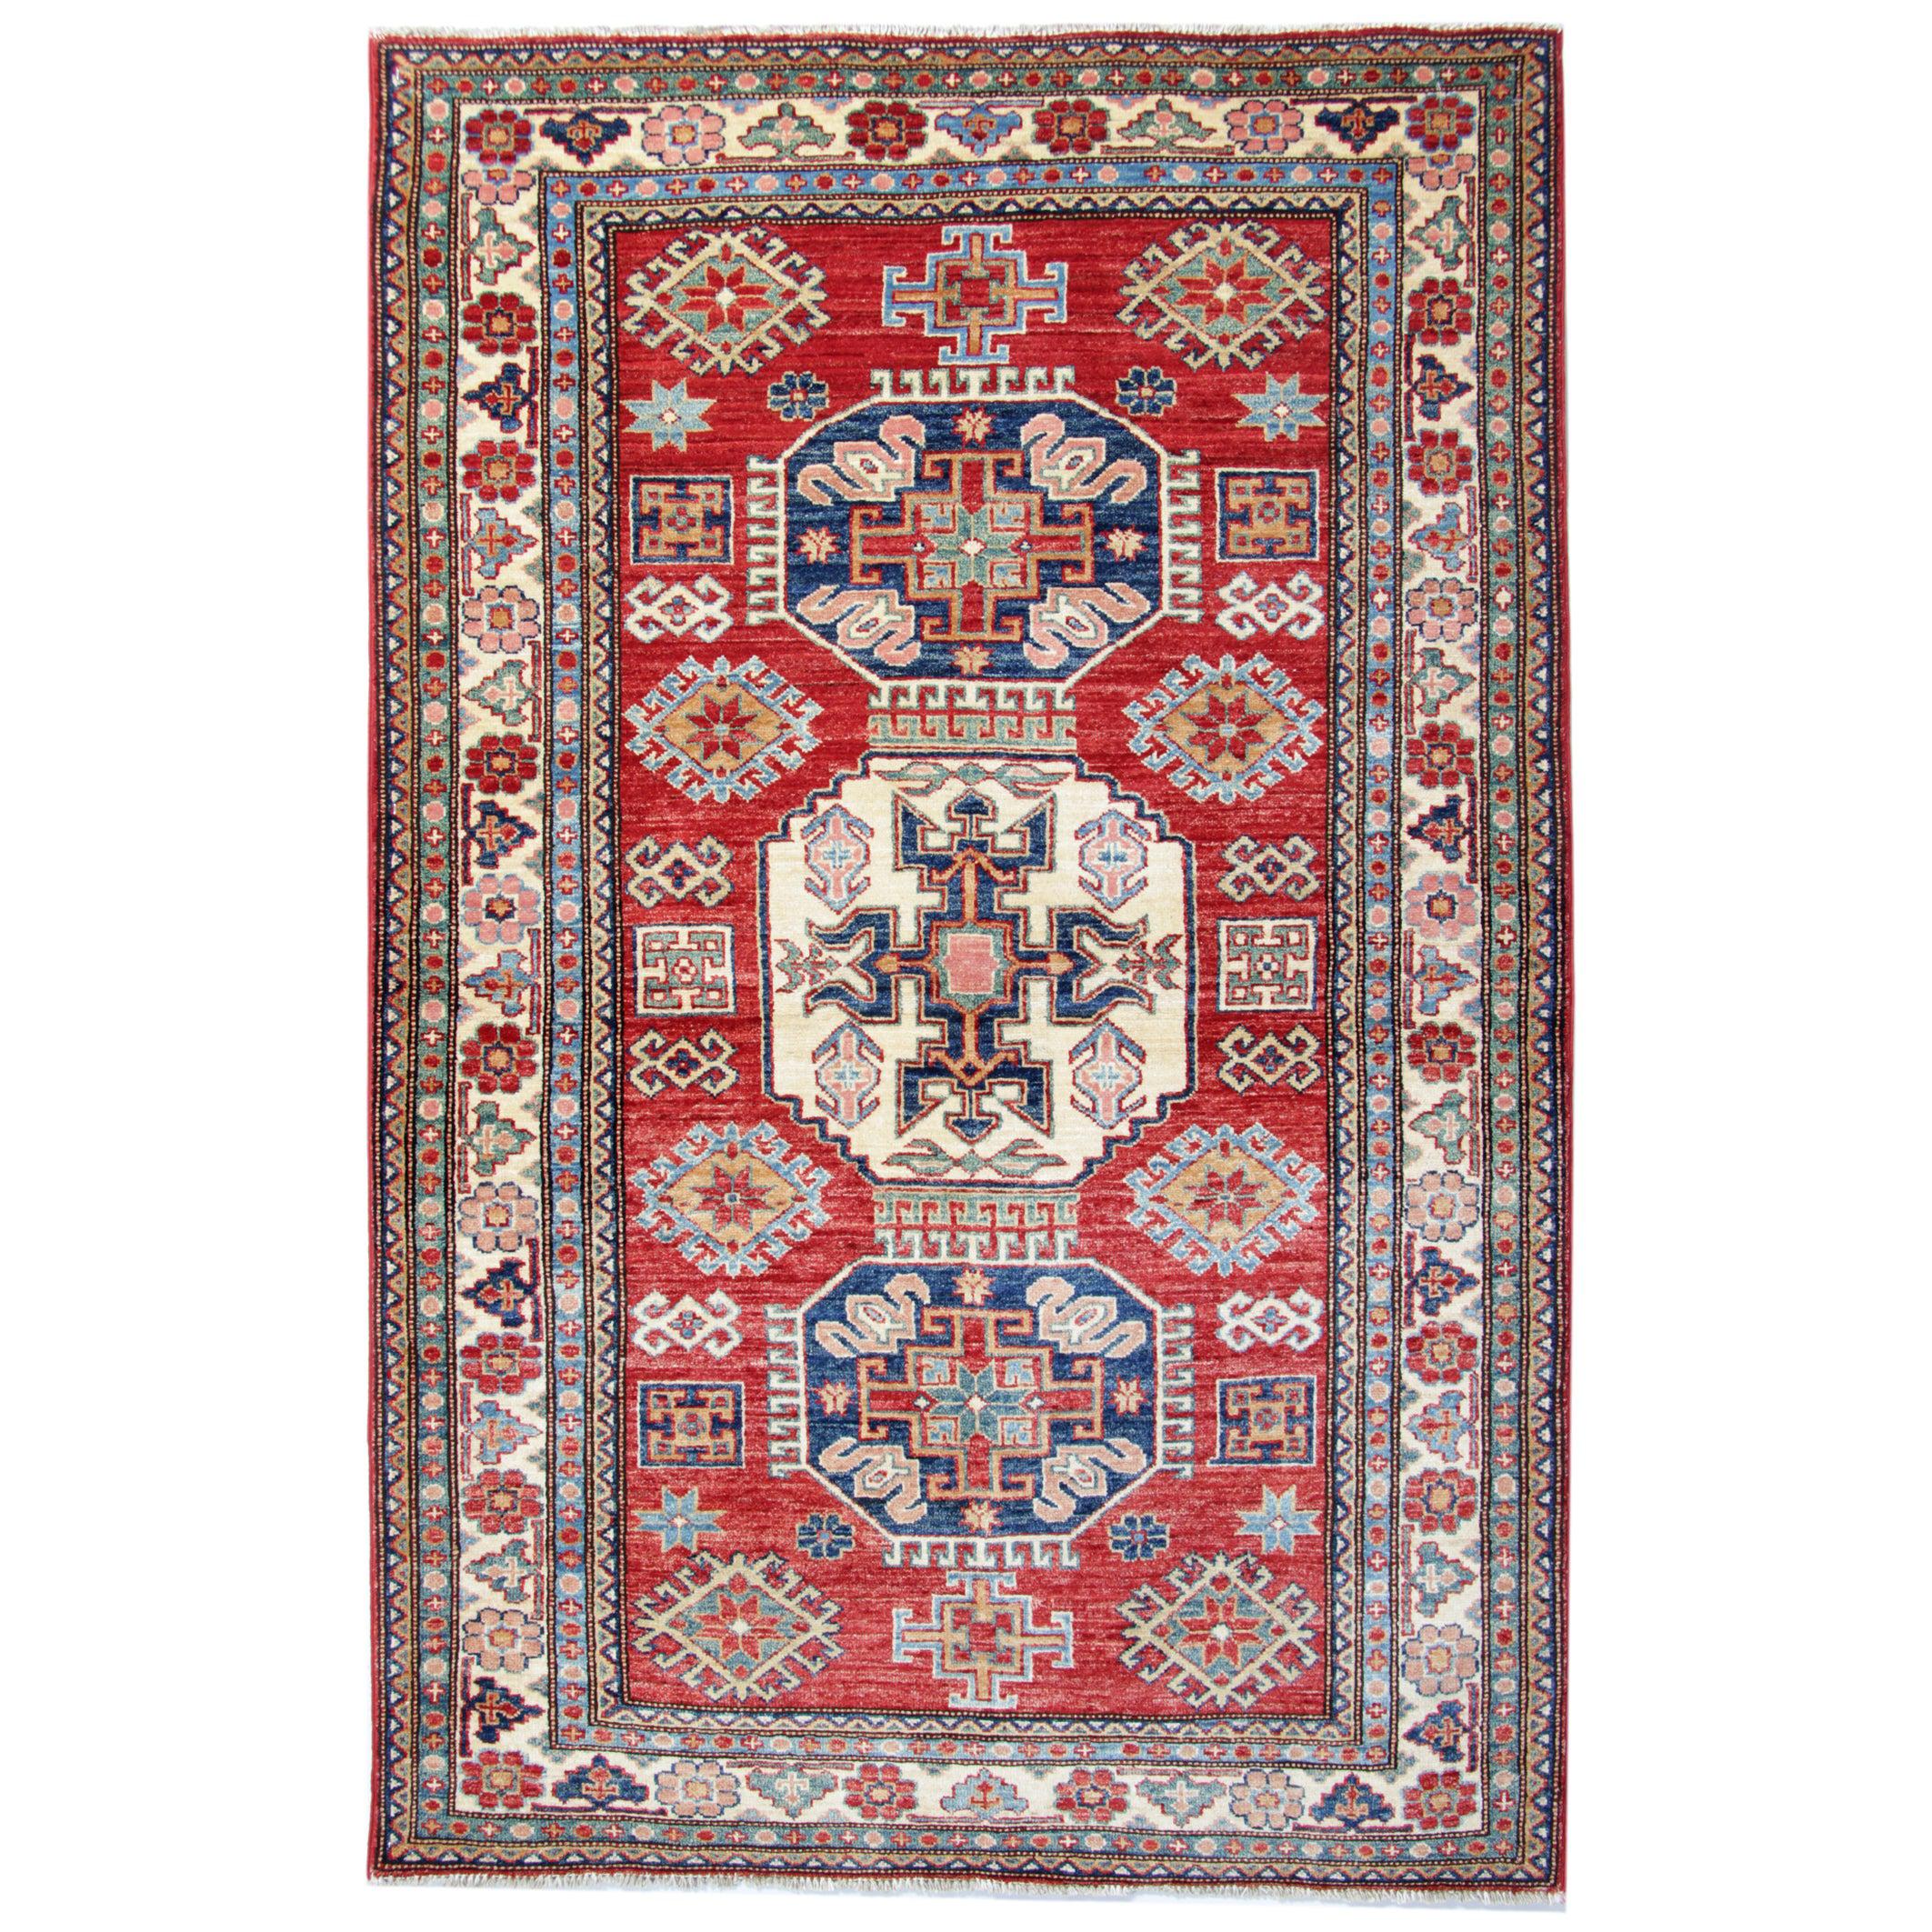 Orientalische Teppiche, handgefertigte rote geometrische Teppiche für das Wohnzimmer